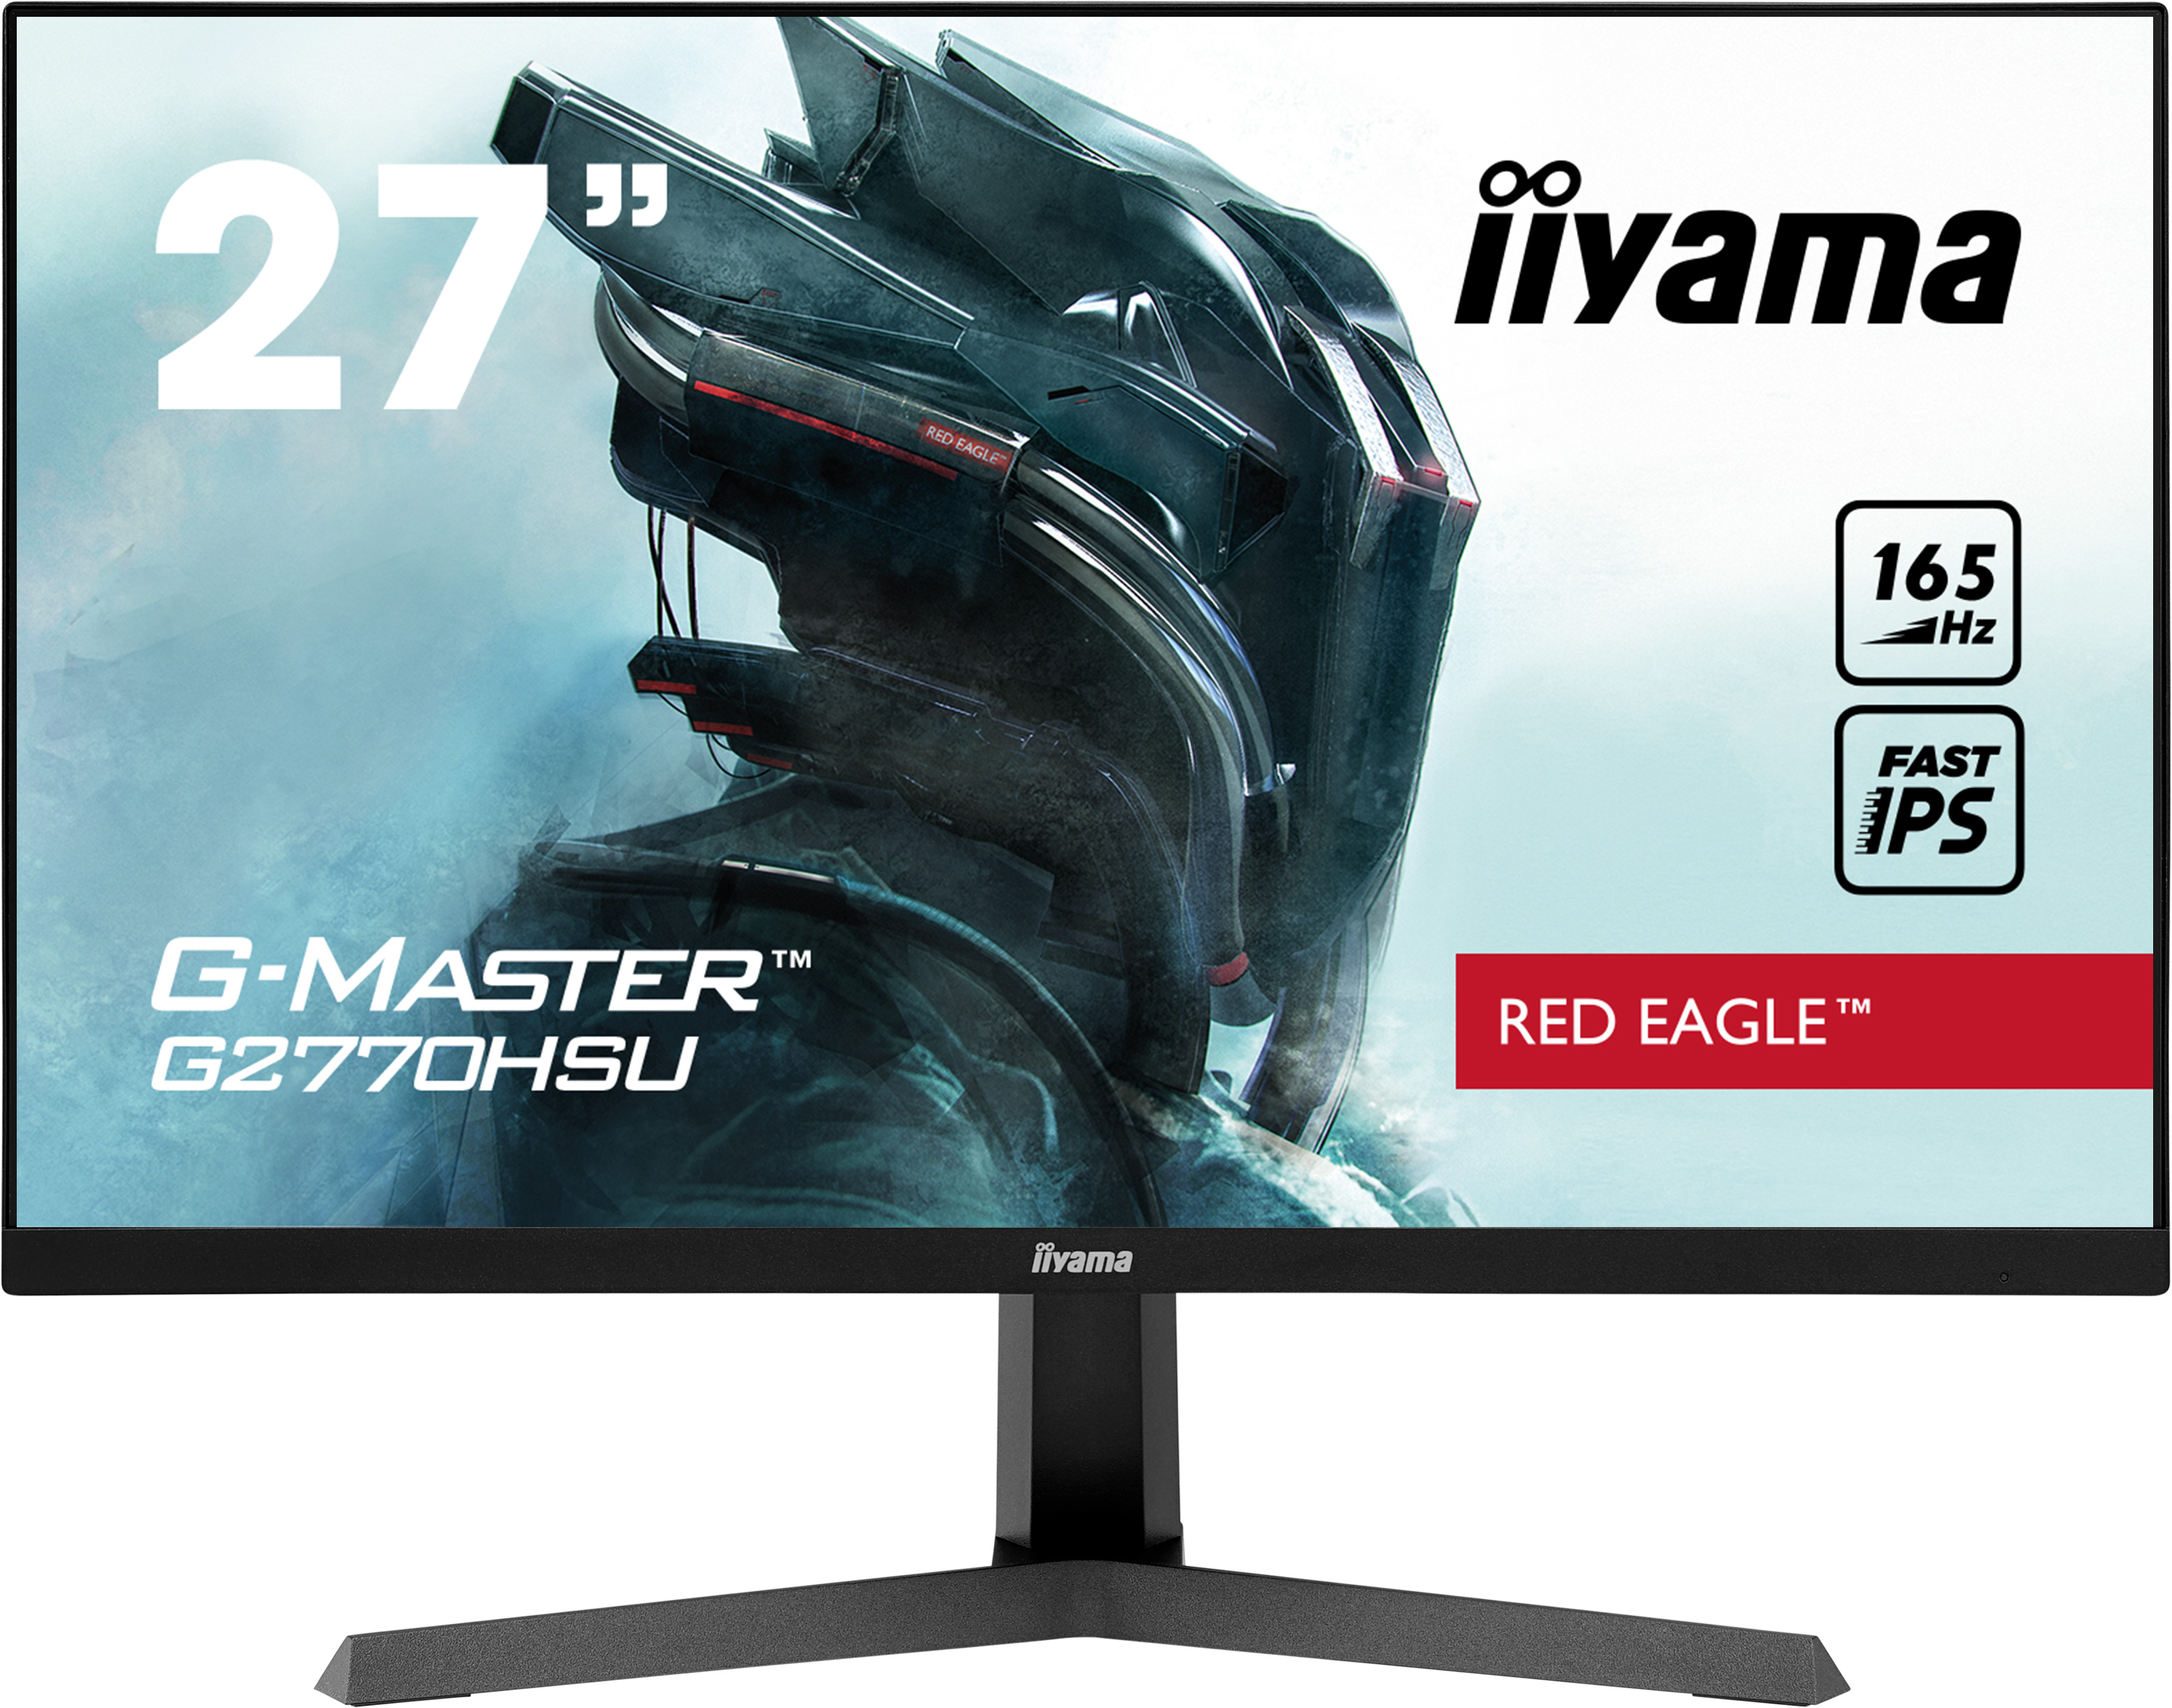 Iiyama G-MASTER G2770HSU-B1 RED EAGLE | 27" | 165Hz  | Gaming Monitor